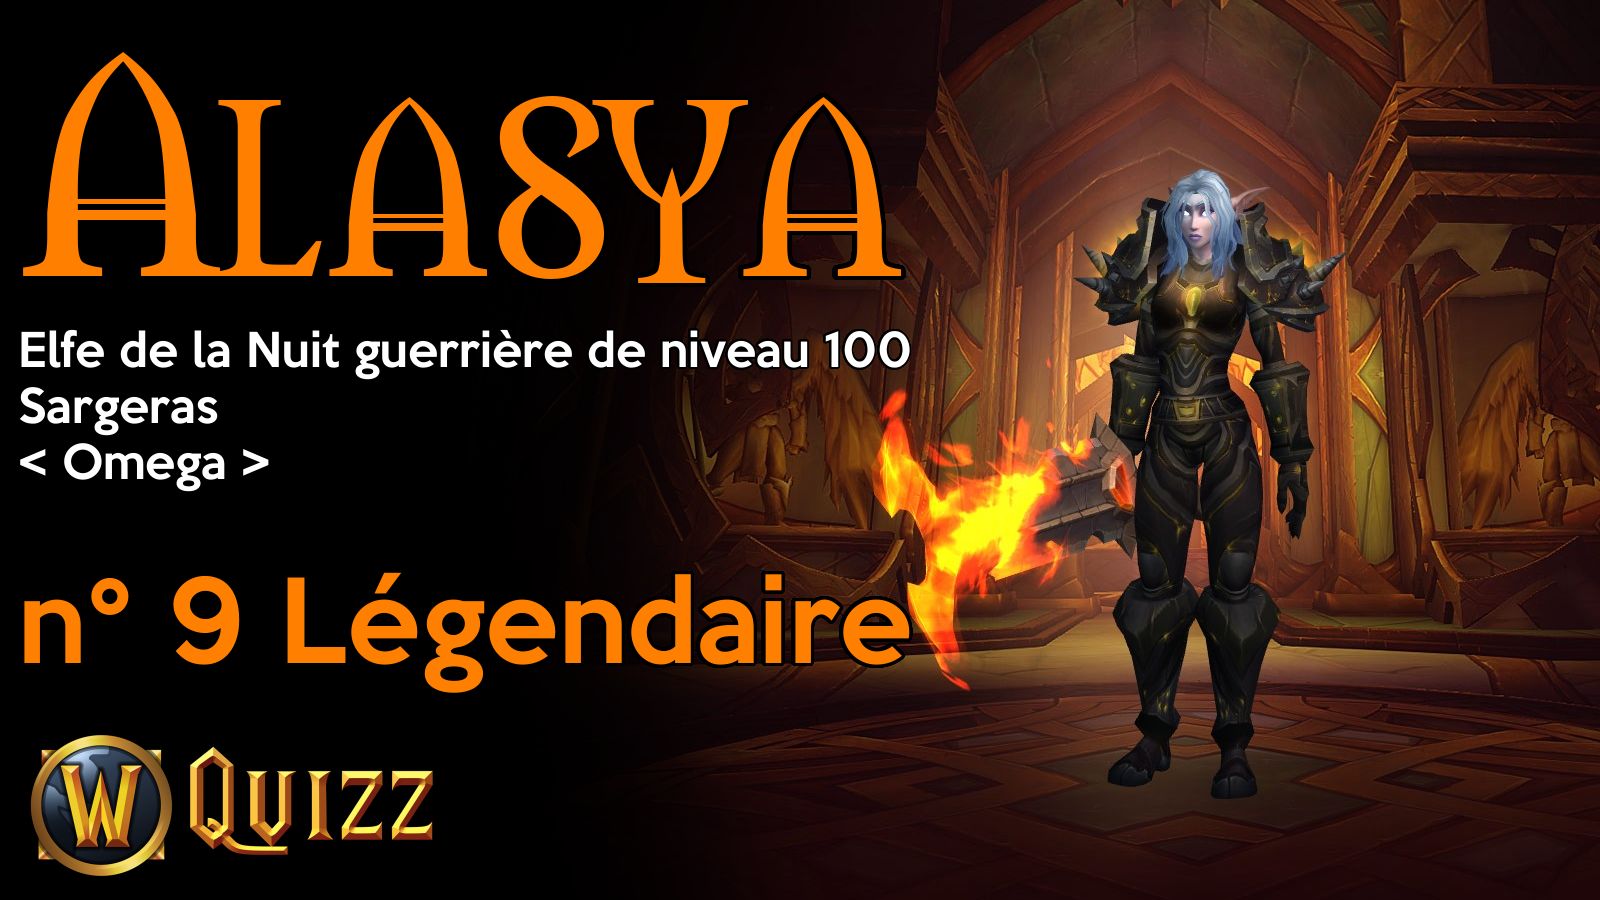 Alasya, Elfe de la Nuit guerrière de niveau 100, Sargeras